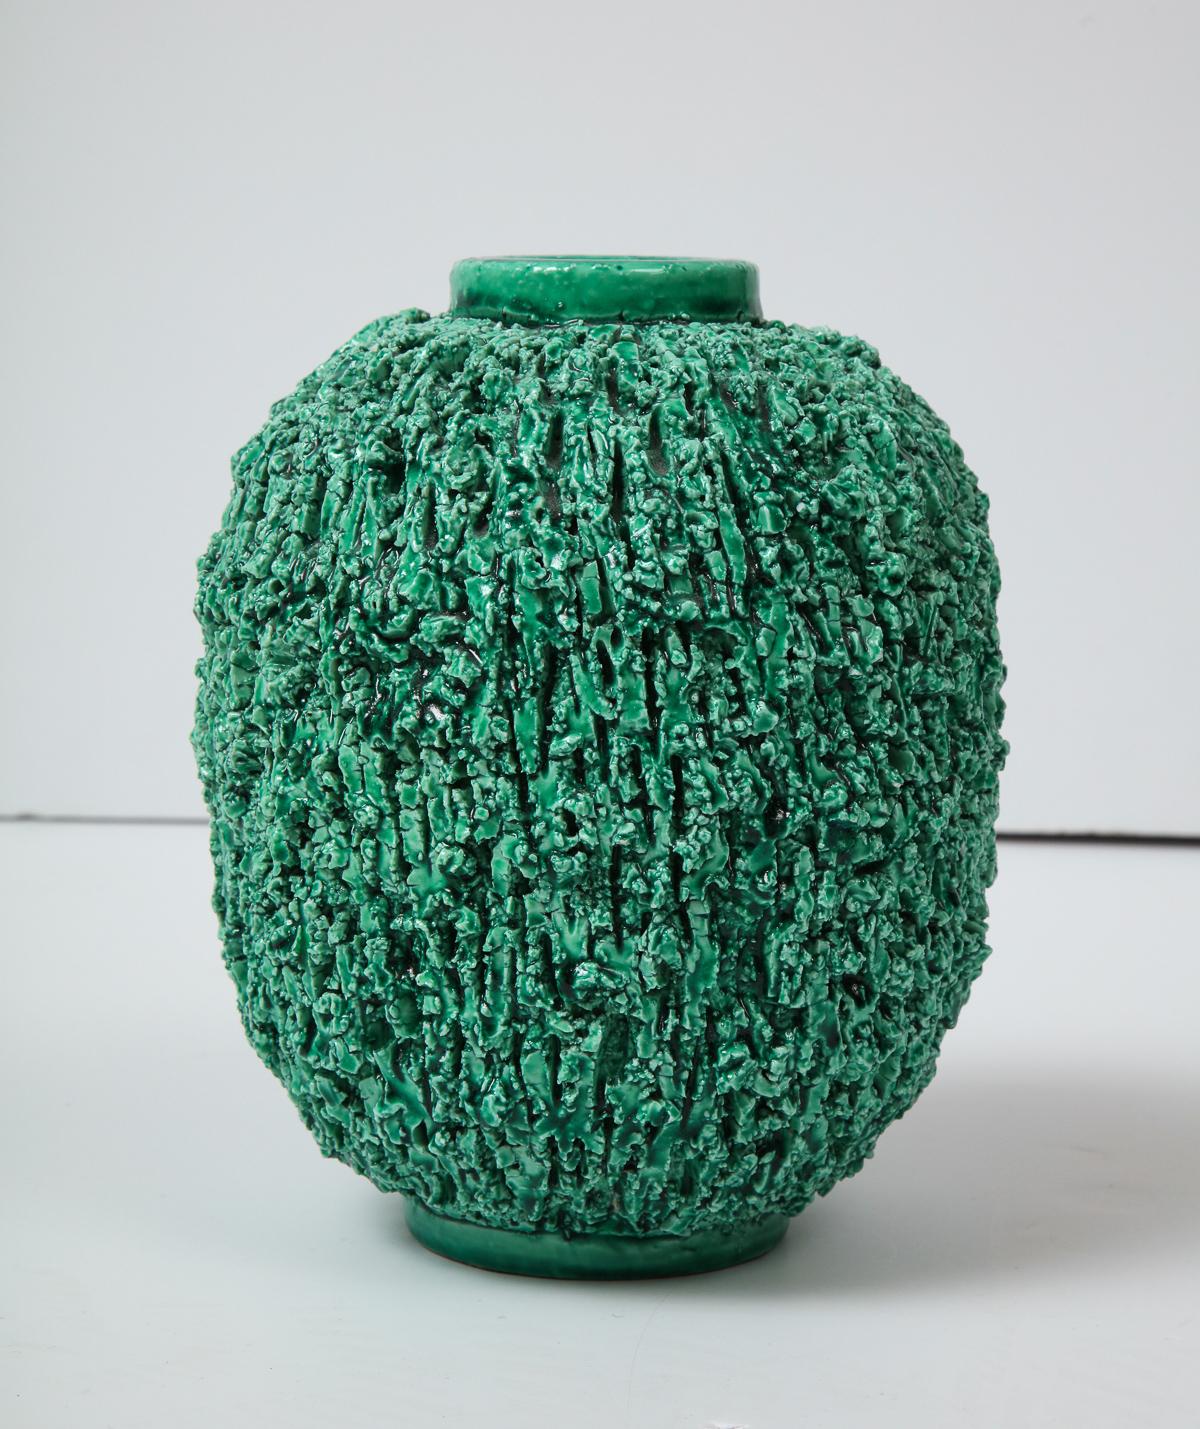 Dekorative grüne Keramikvase von Gunnar Nylund, Gustavsberg, Schweden, um 1950.
Dies ist die große von drei Vasen mit dem Namen 